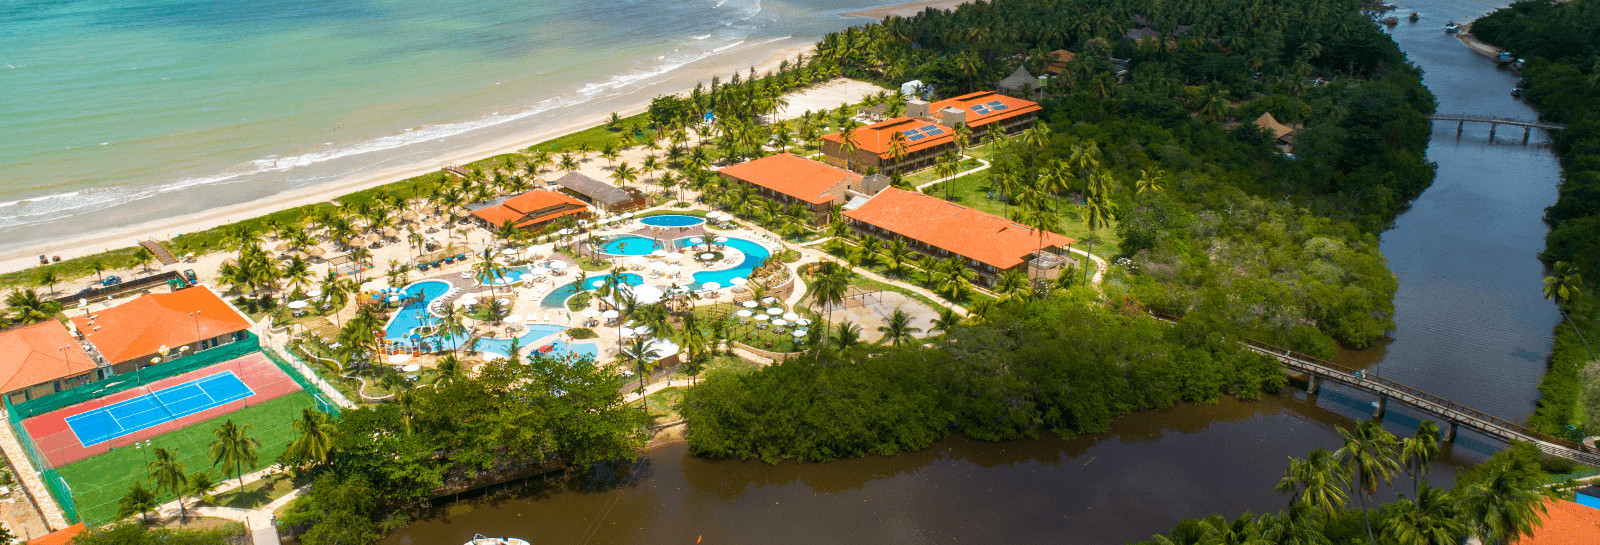 Vídeo com imagens aéreas e de vários ângulos da estrutura do salinas maragogi all inclusive resort. O melhor resort do Brasil está localizado em Maragogi, no litoral de alagoas, sendo uma das praias mais paradisíacas do nordeste .